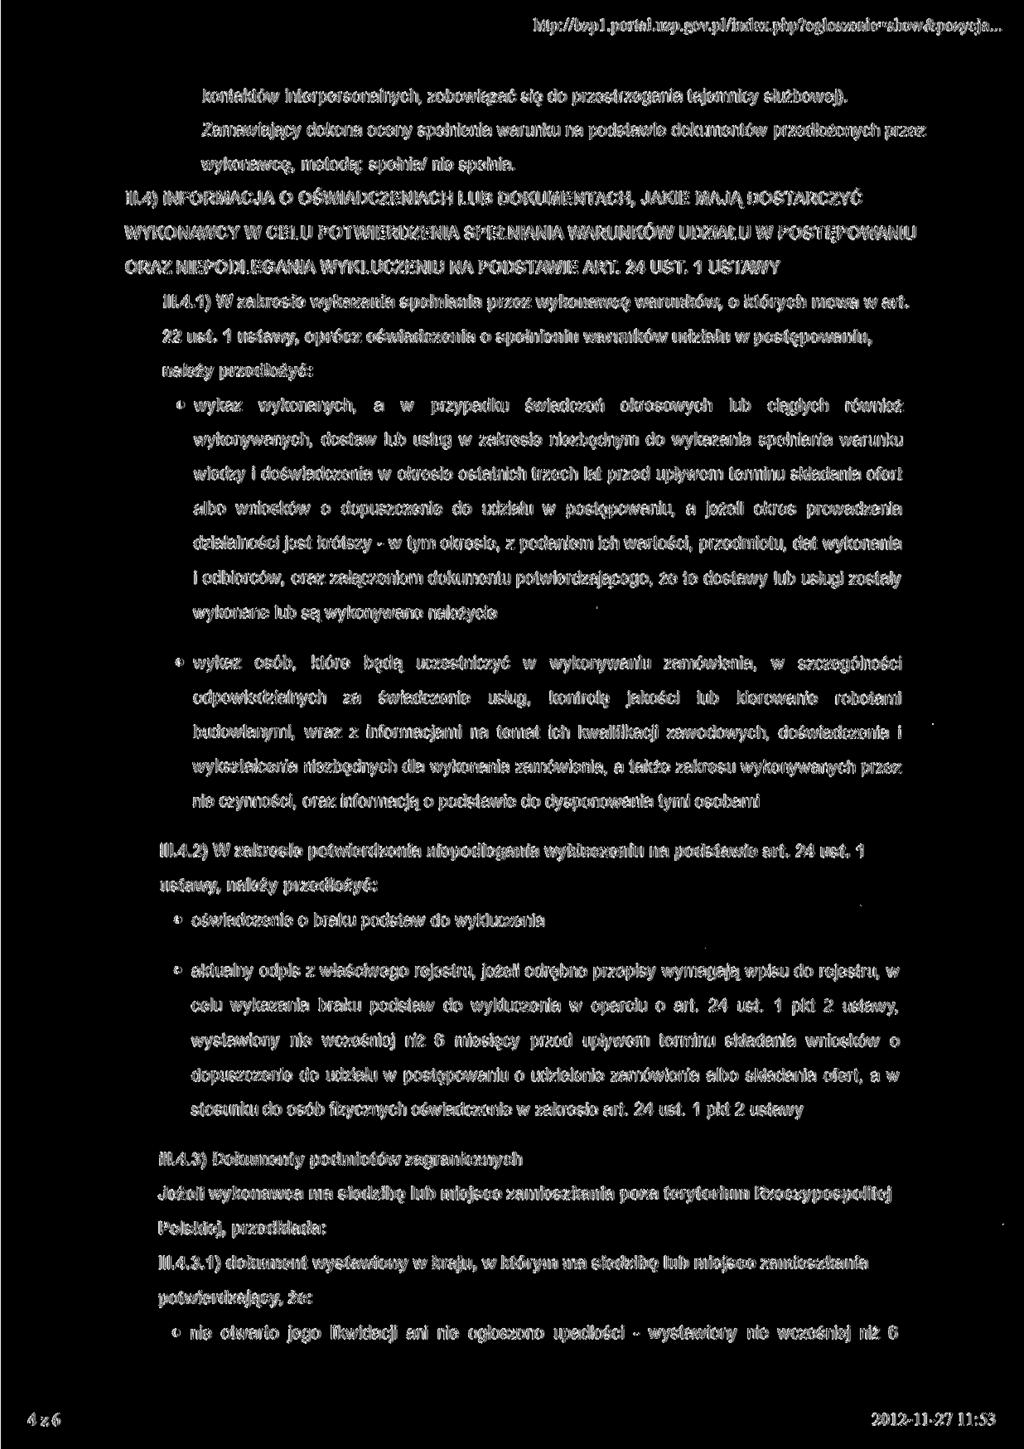 http://bzpl.portal.uzp.gov.pl/index.php?ogloszenie=show&pozycja... kontaktów interpersonalnych, zobowiązać się do przestrzegania tajemnicy służbowej).